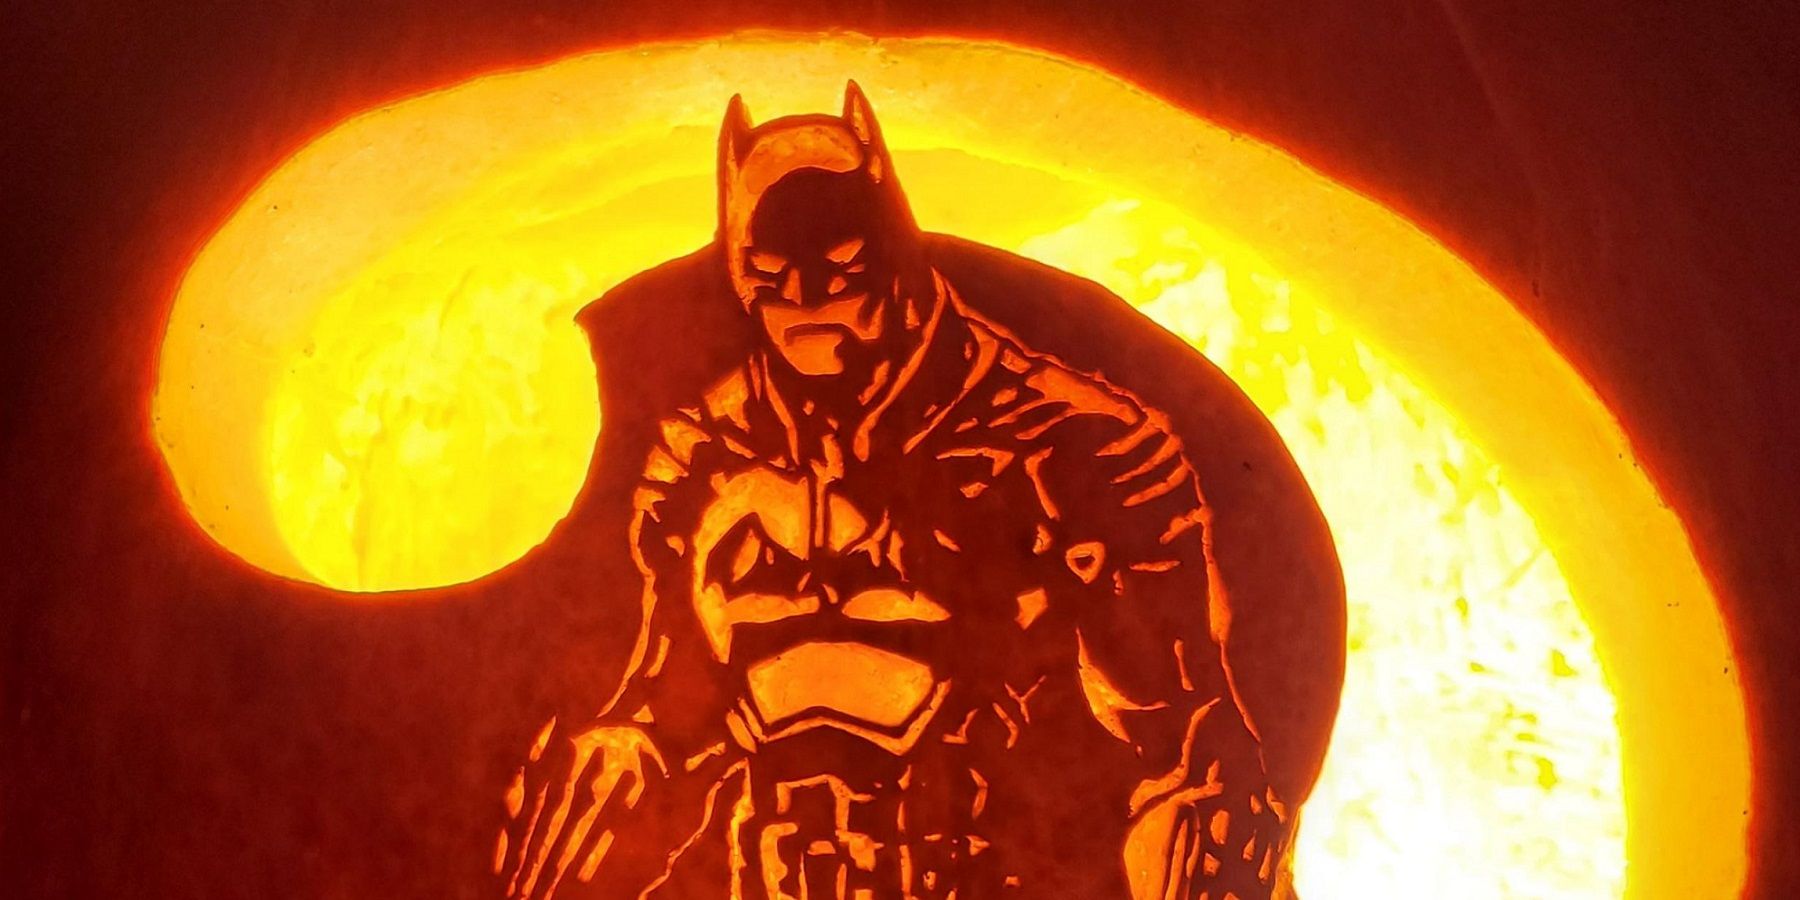 batman pumpkin carving